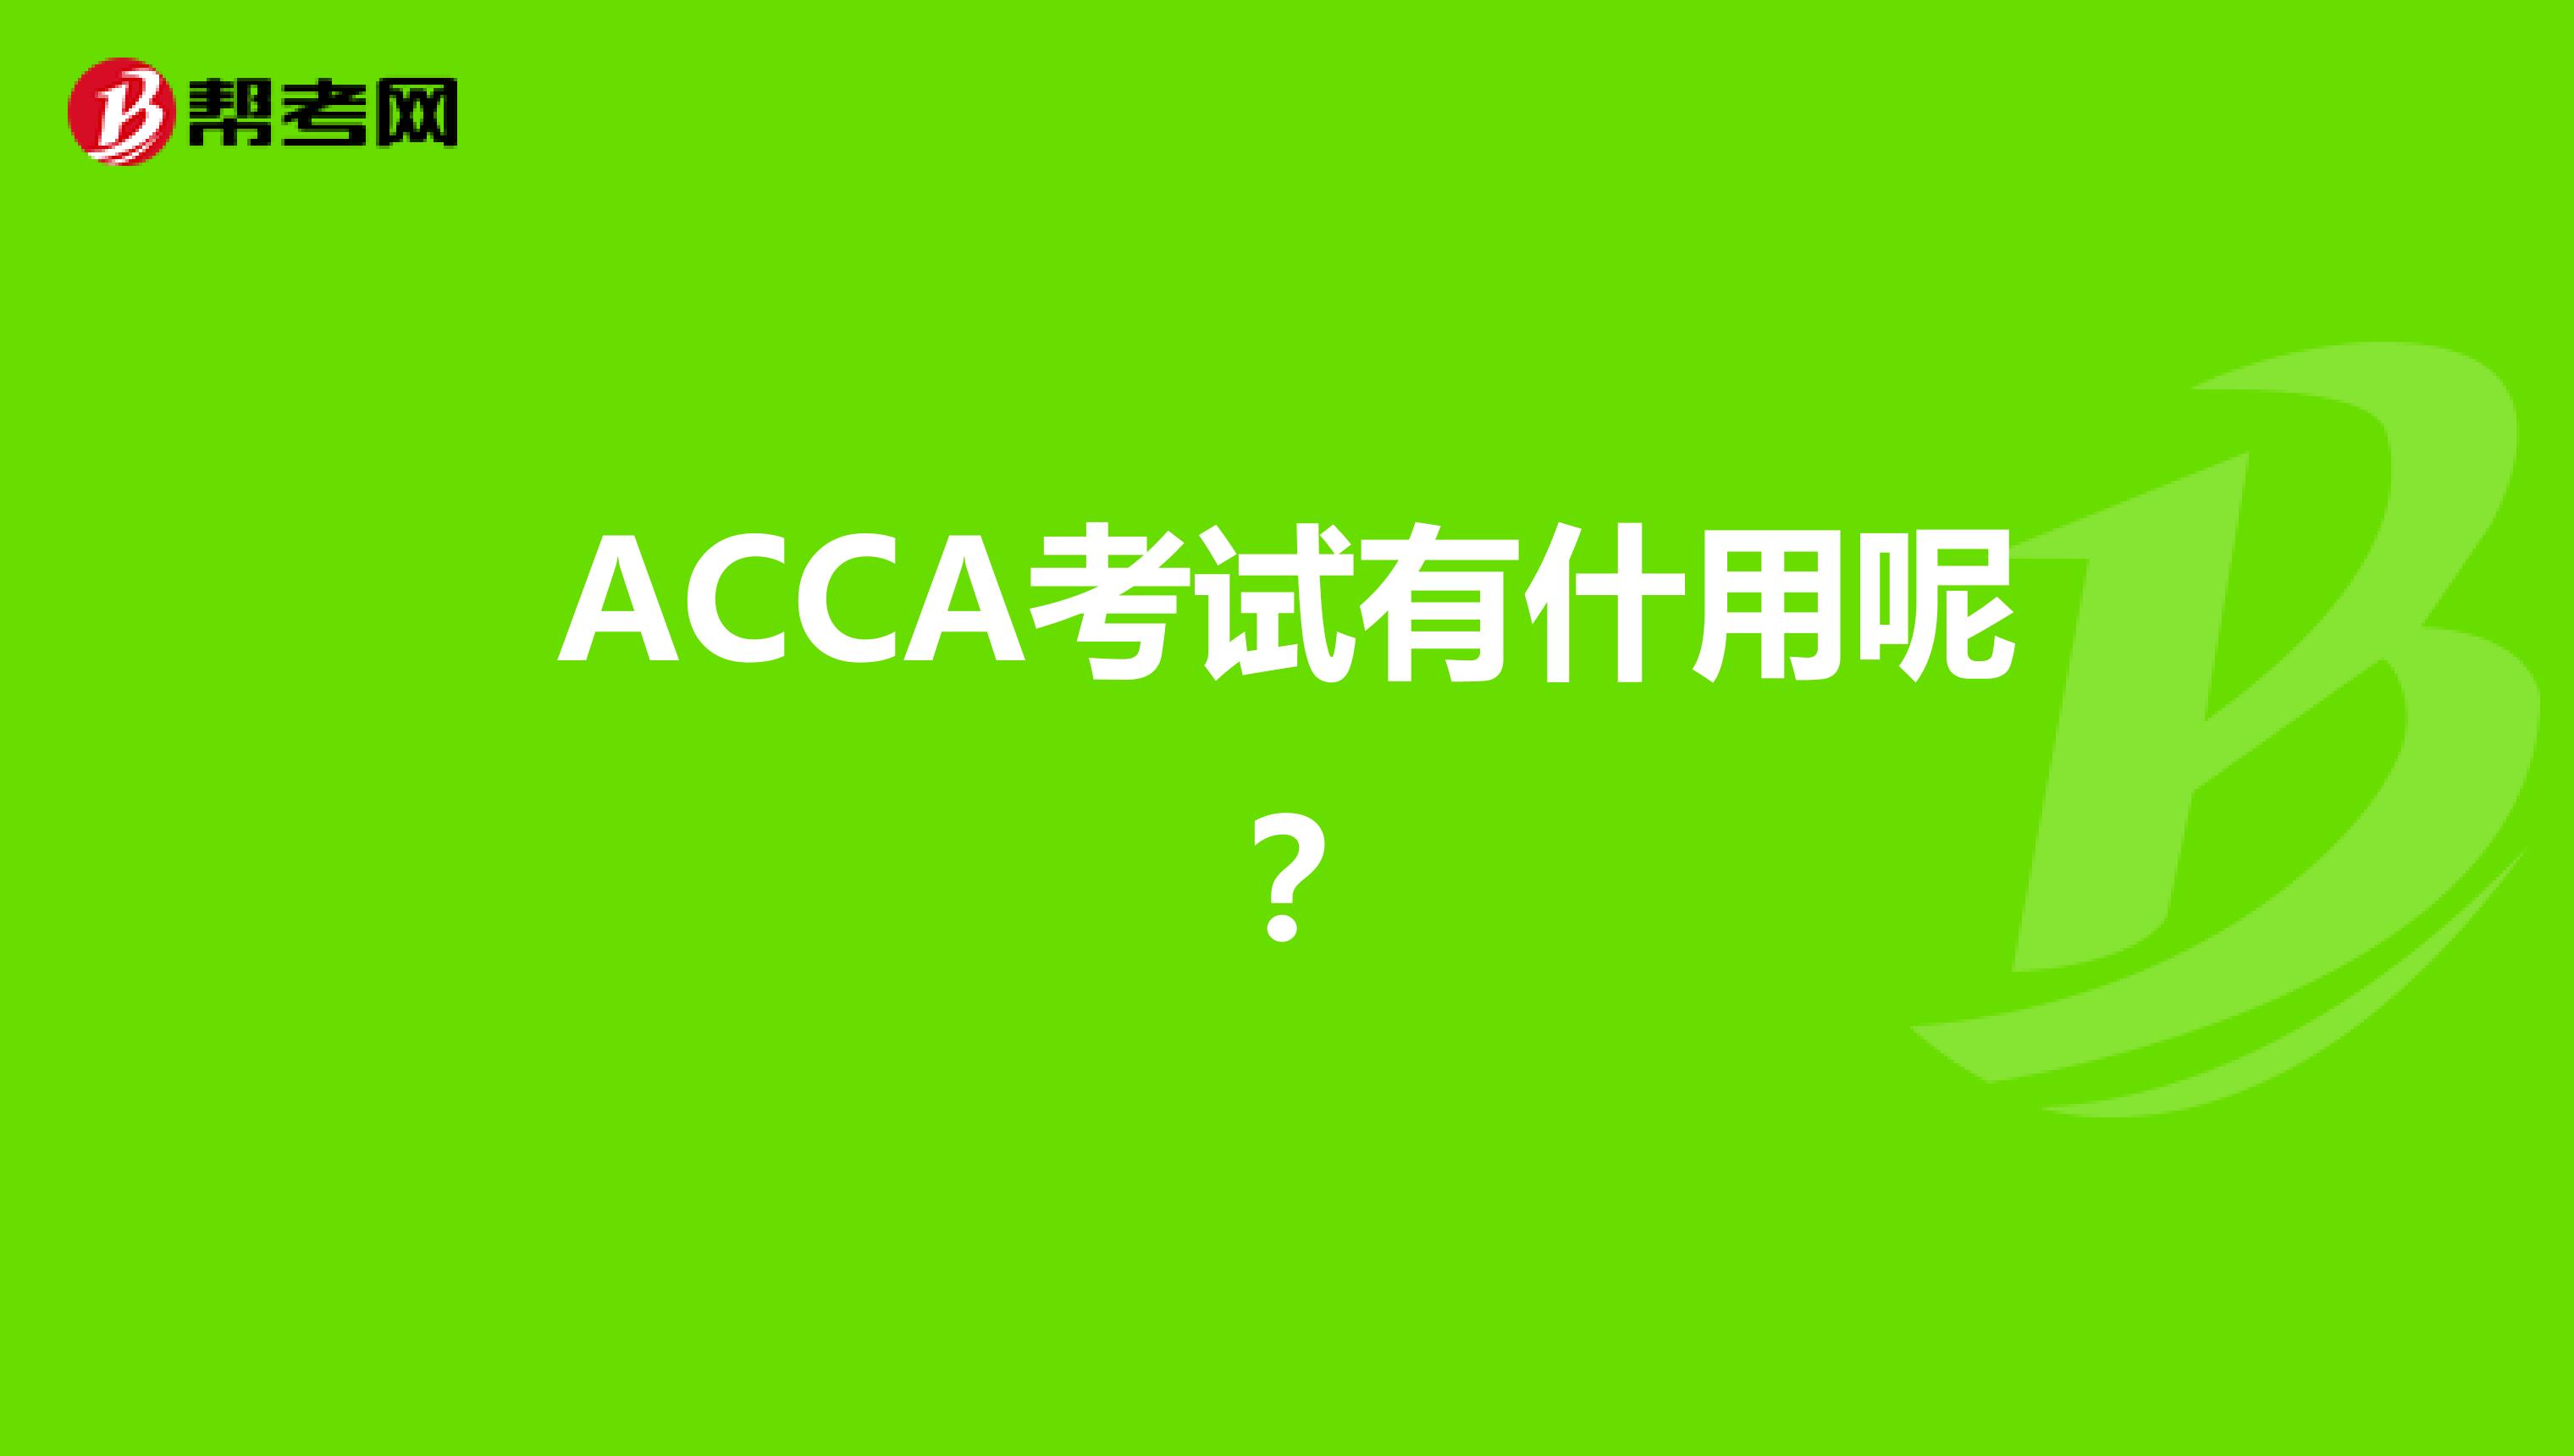 ACCA考试有什用呢？